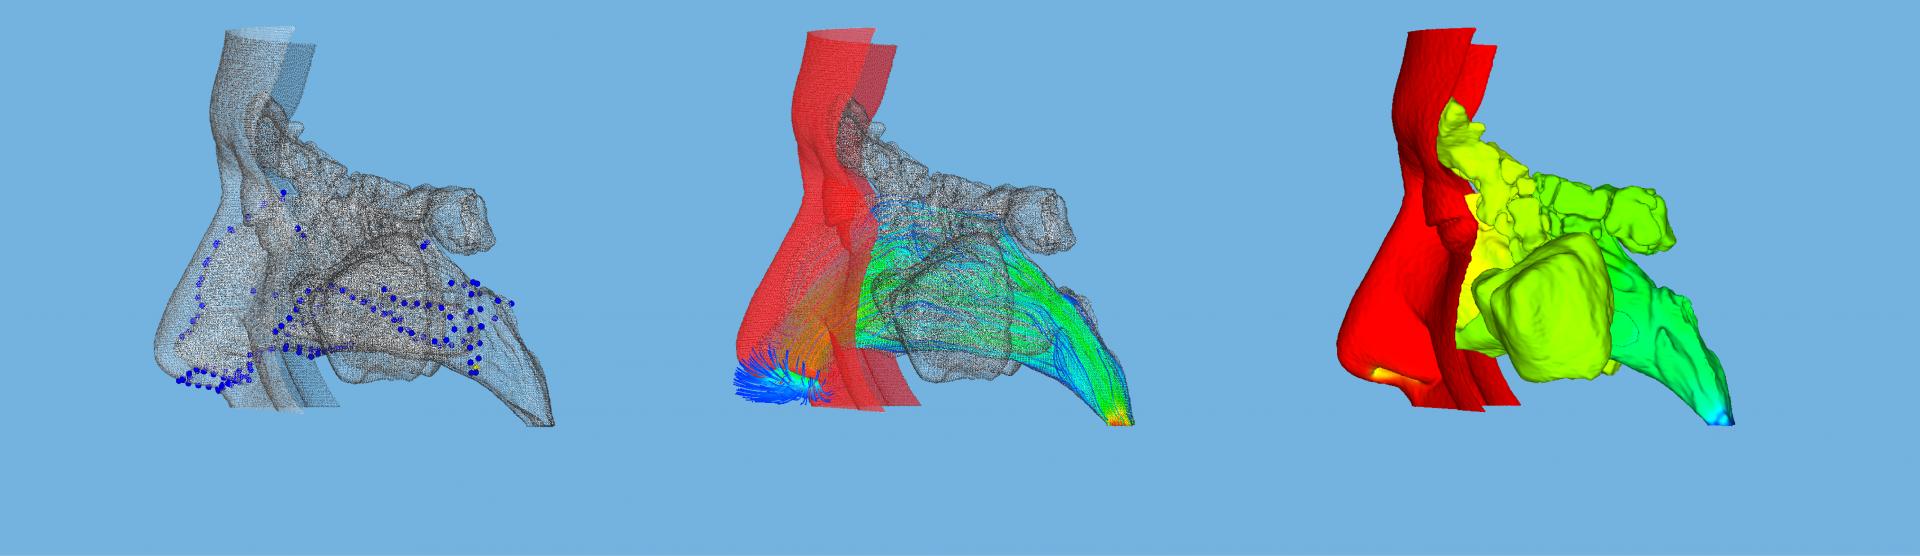 Modelos 3D de vías aéreas nasales